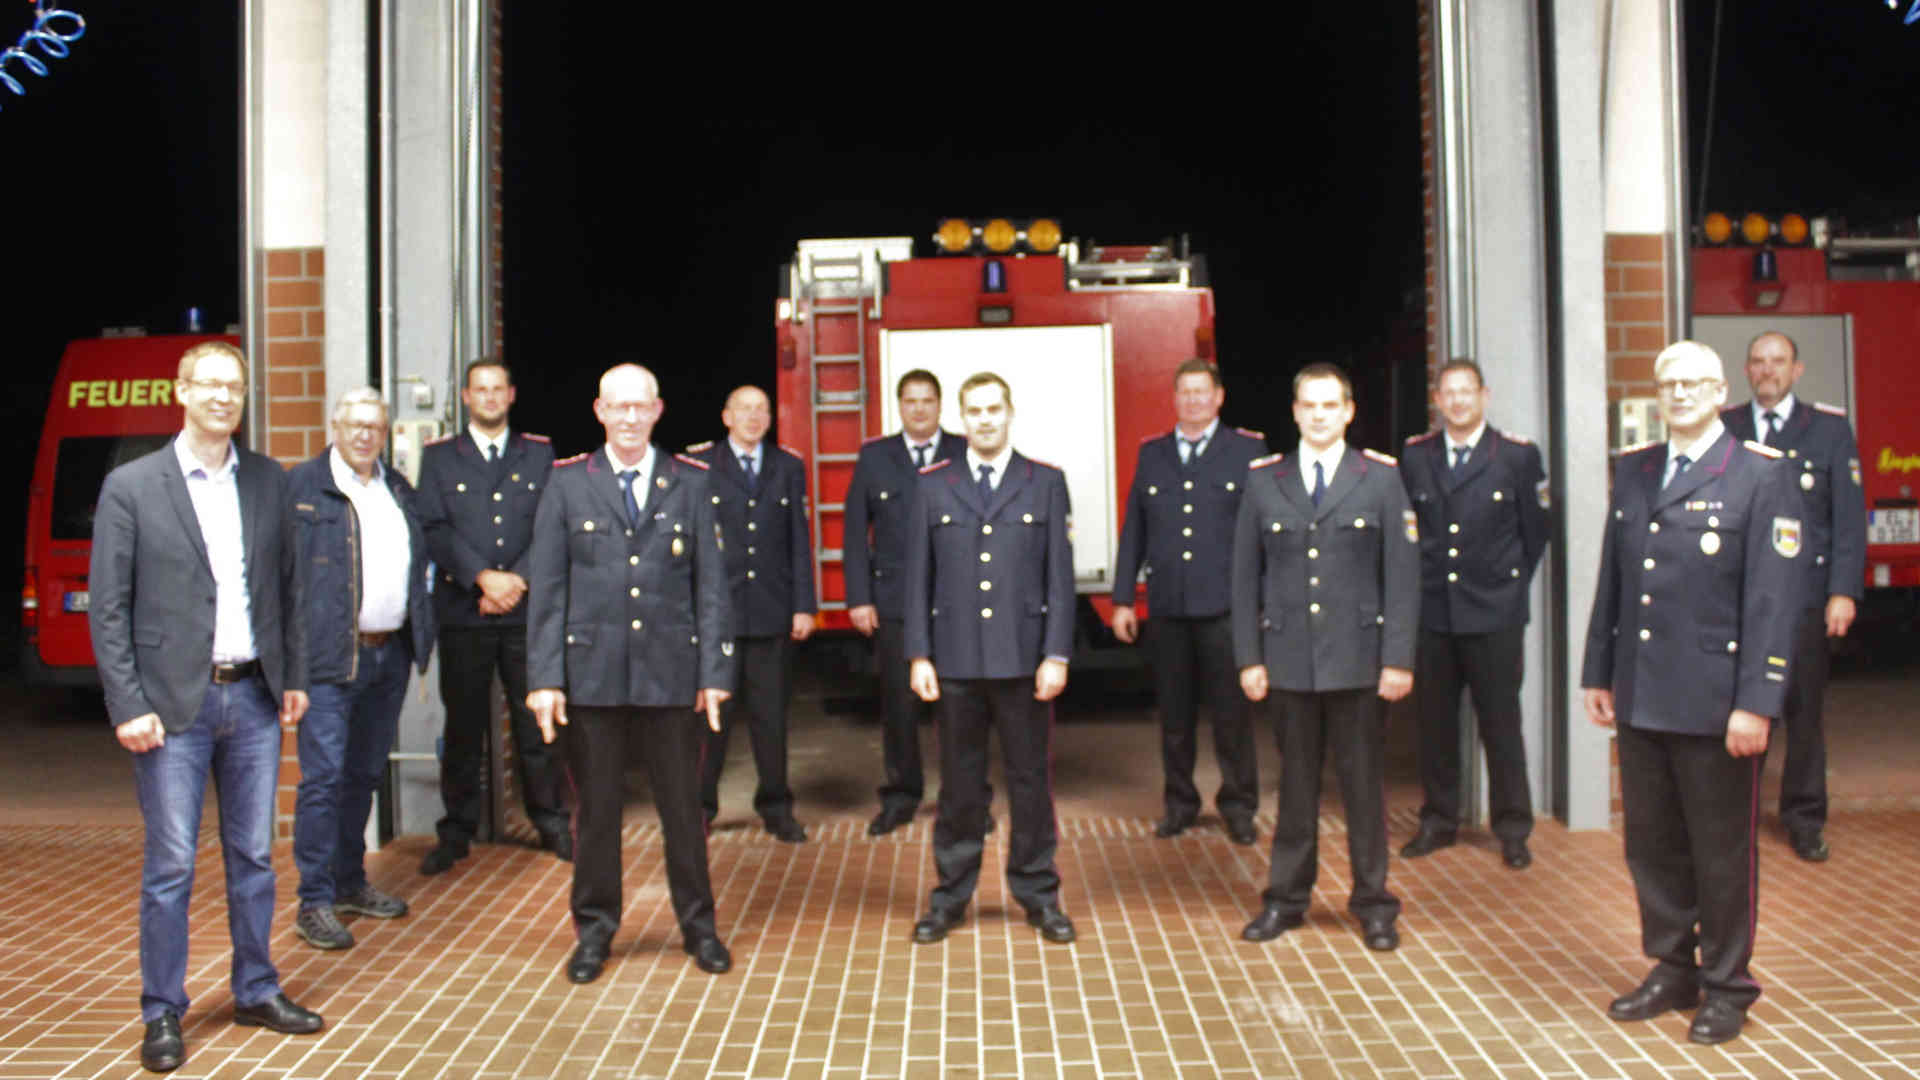 Screen_Mitgliederversammlung Feuerwehr Dersum